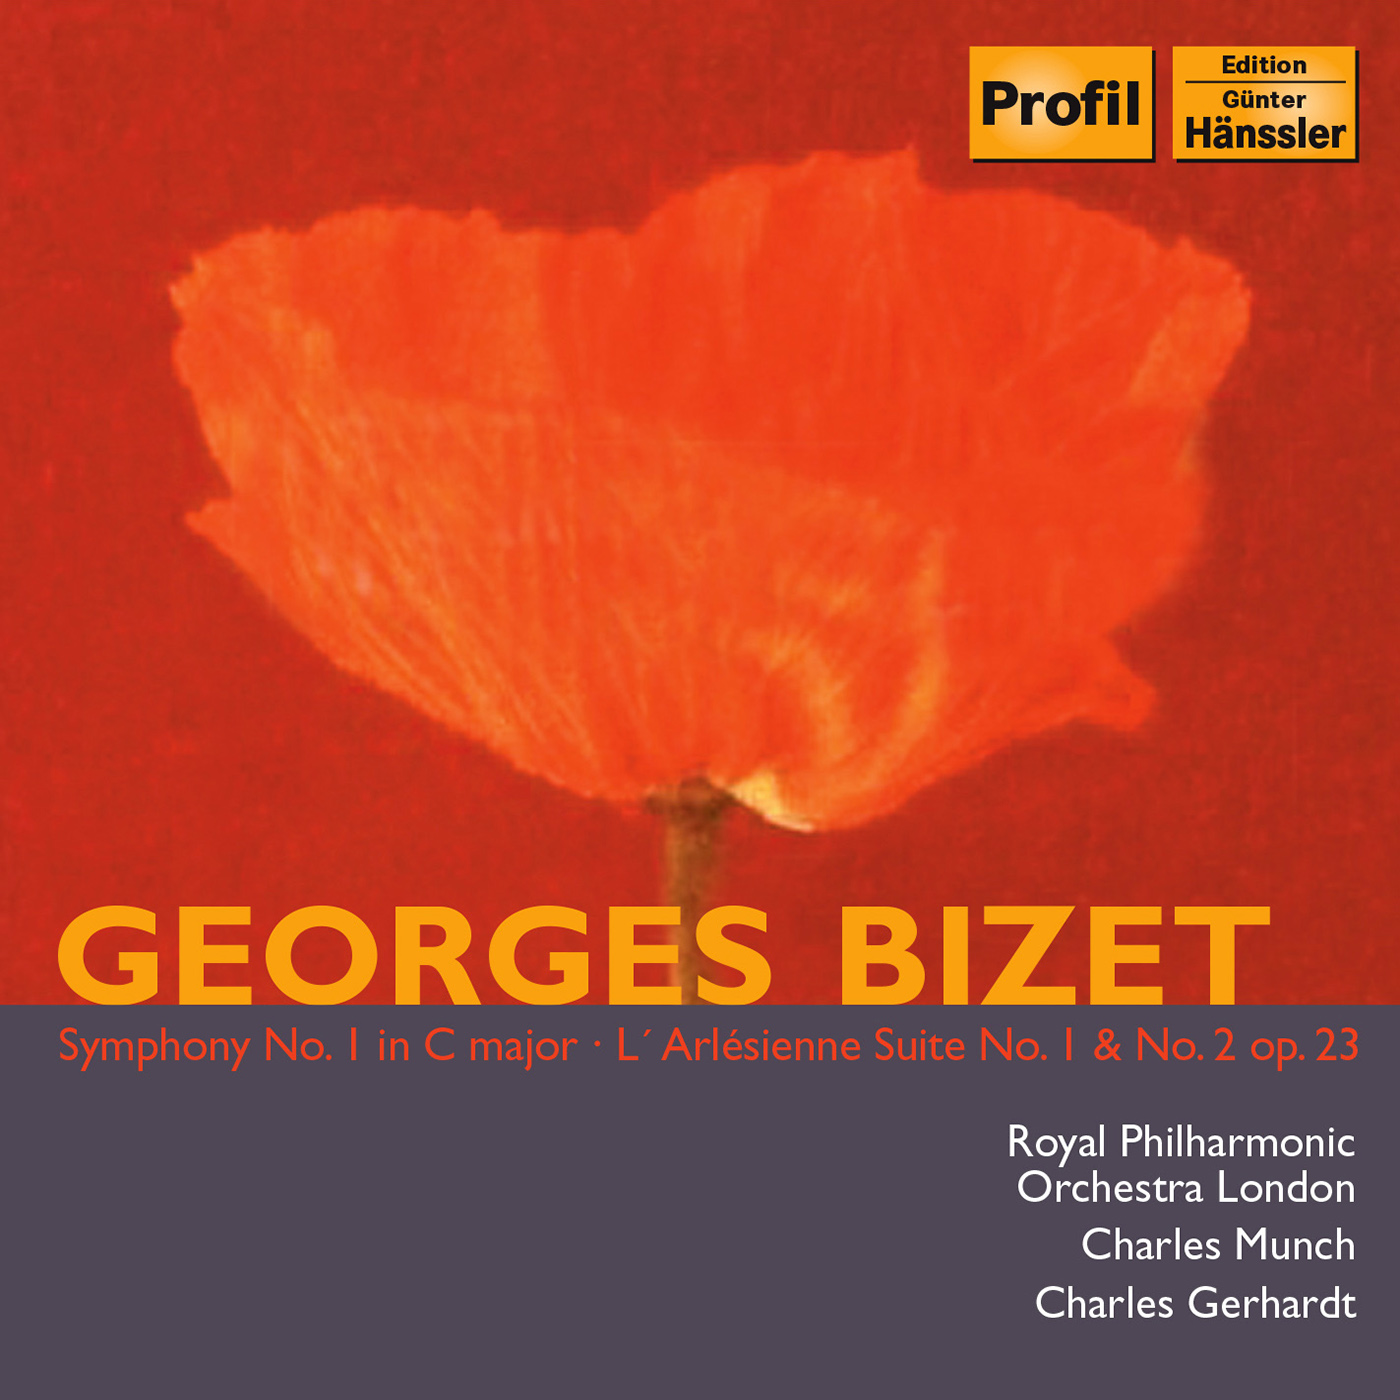 BIZET: Symphony No. 1 / L'Arlesienne Suites Nos. 1 and 2